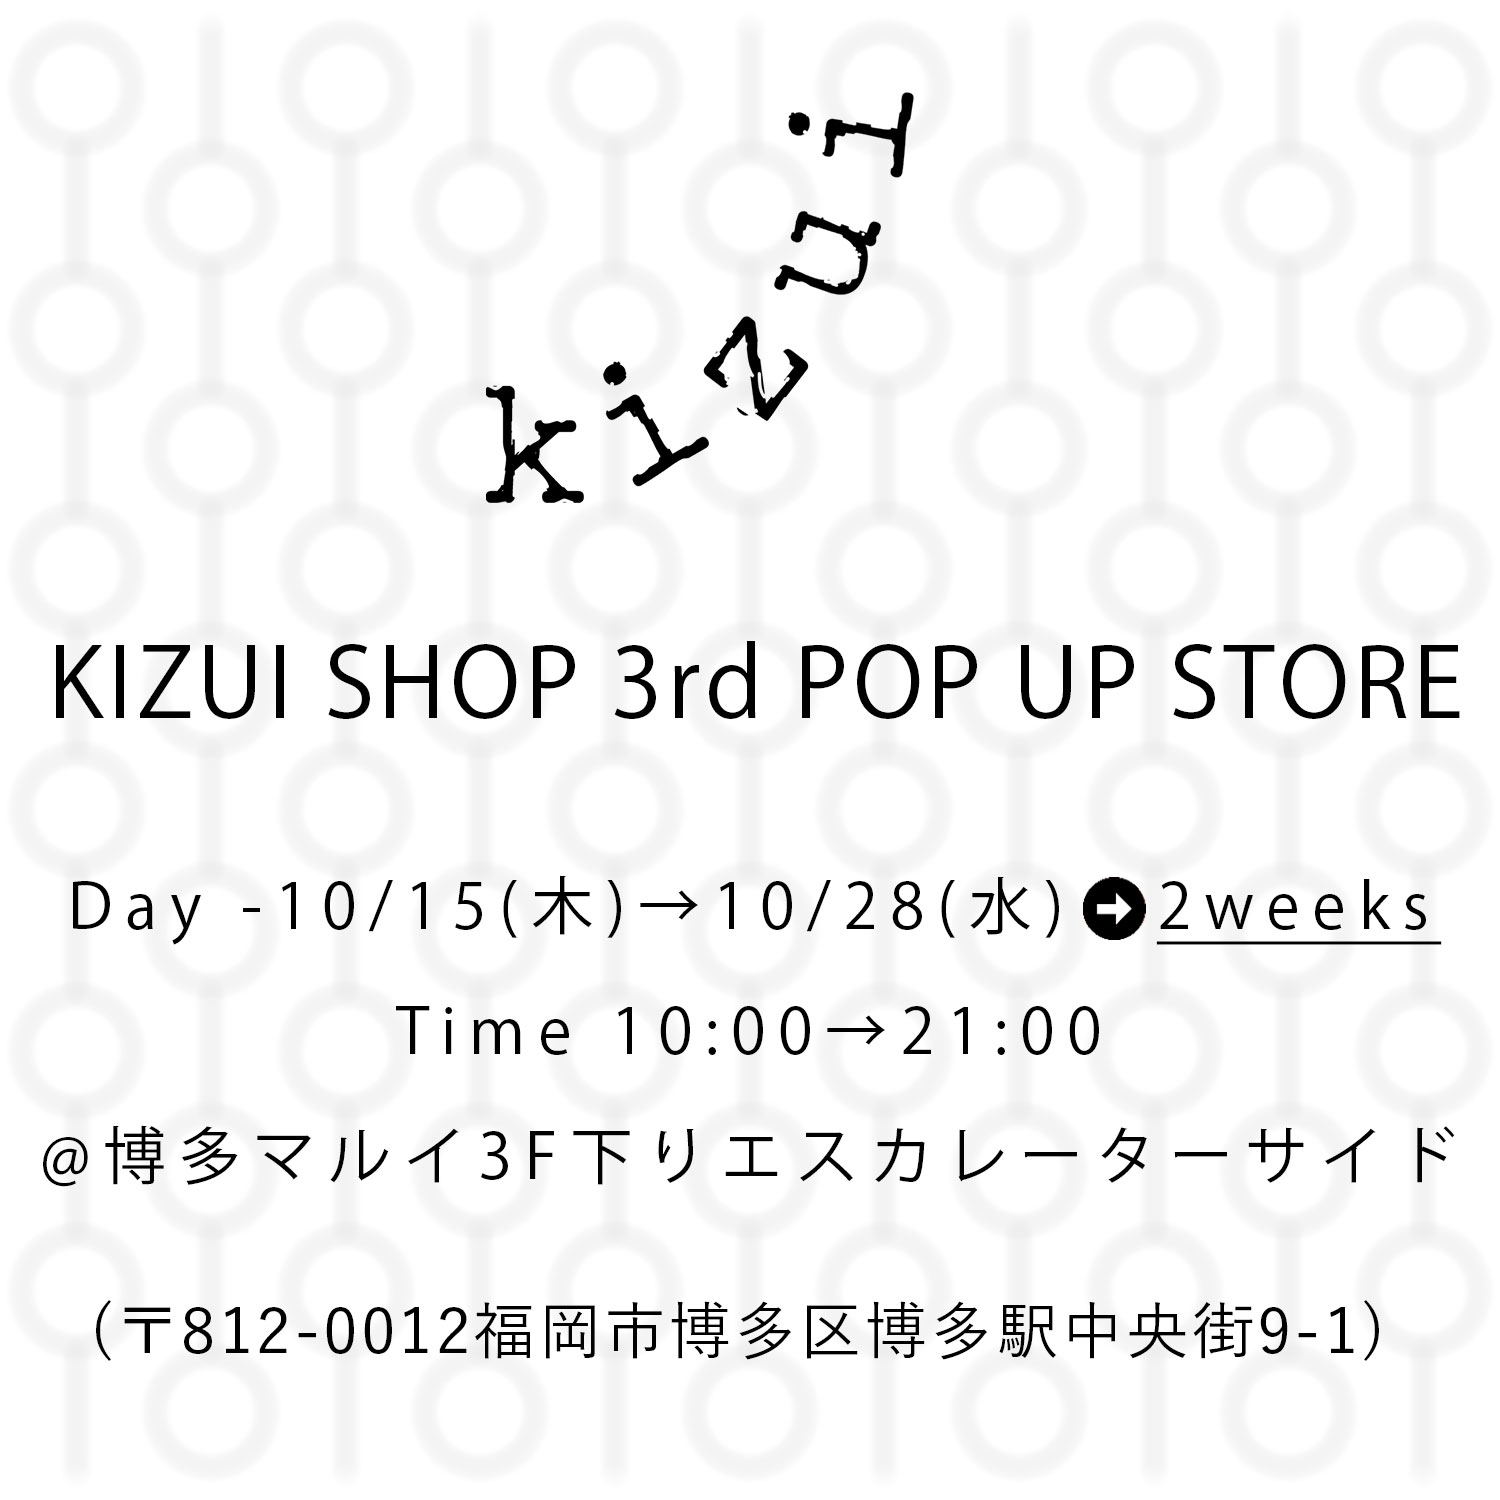 KIZUI SHOP 3rd POP UP STORE!!!